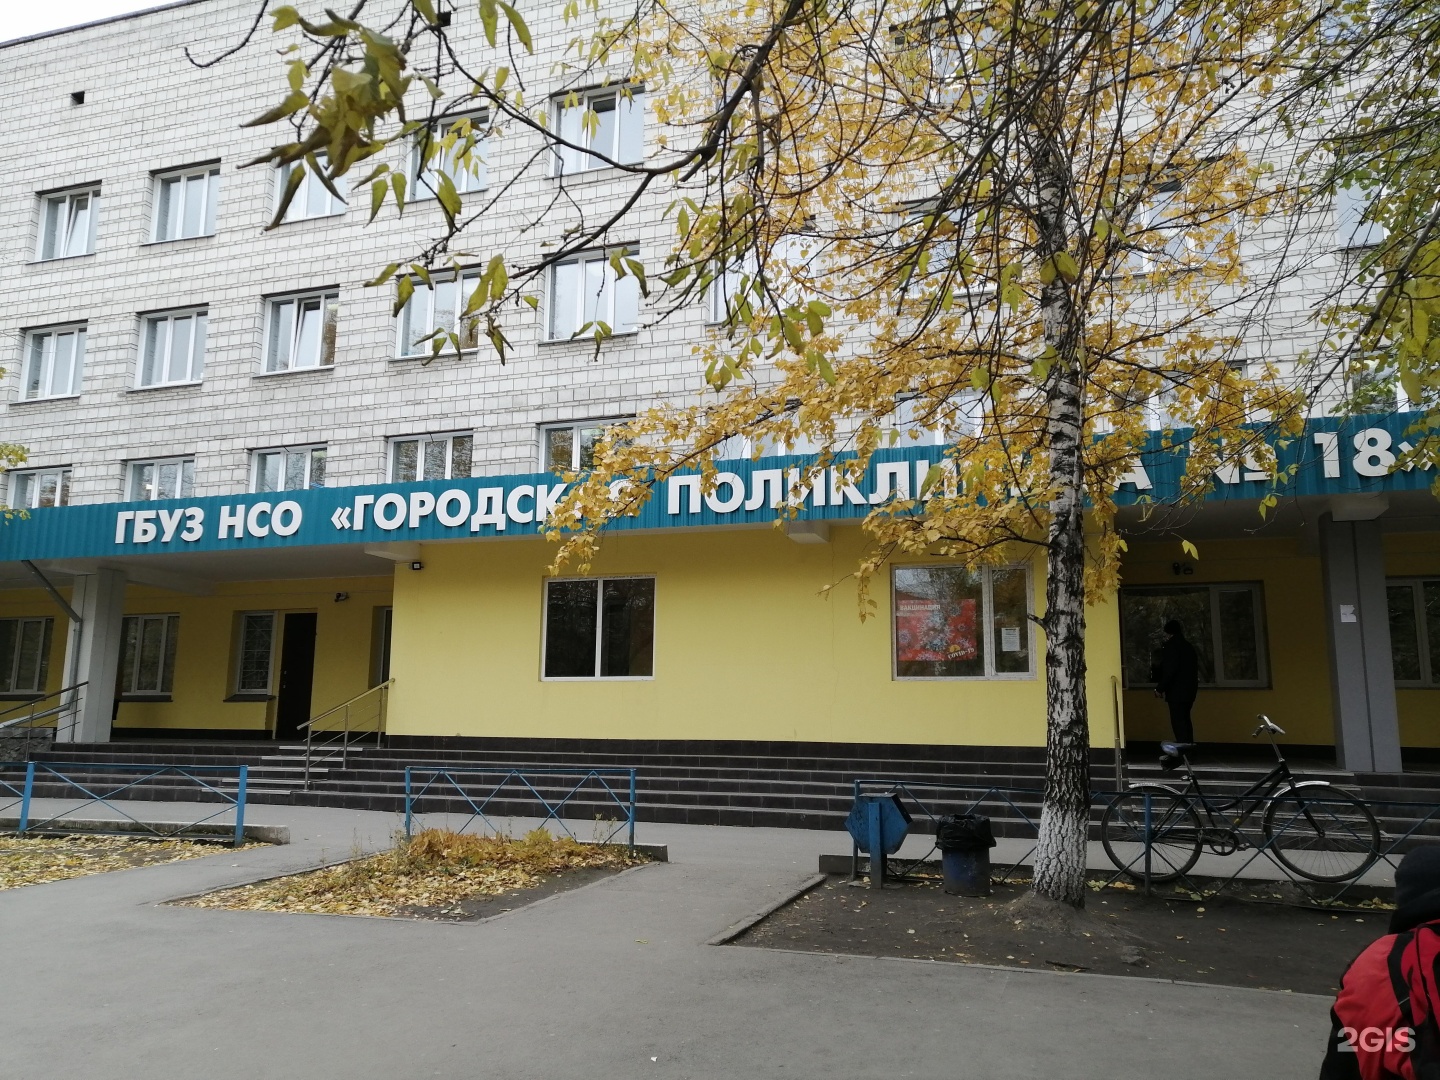 Сайт поликлиники 18 минск. Широкая 113 поликлиника. 18 Поликлиника Новосибирск широкая 113. Ул широкая 113/2 Новосибирск. Широкая 15 Новосибирск.